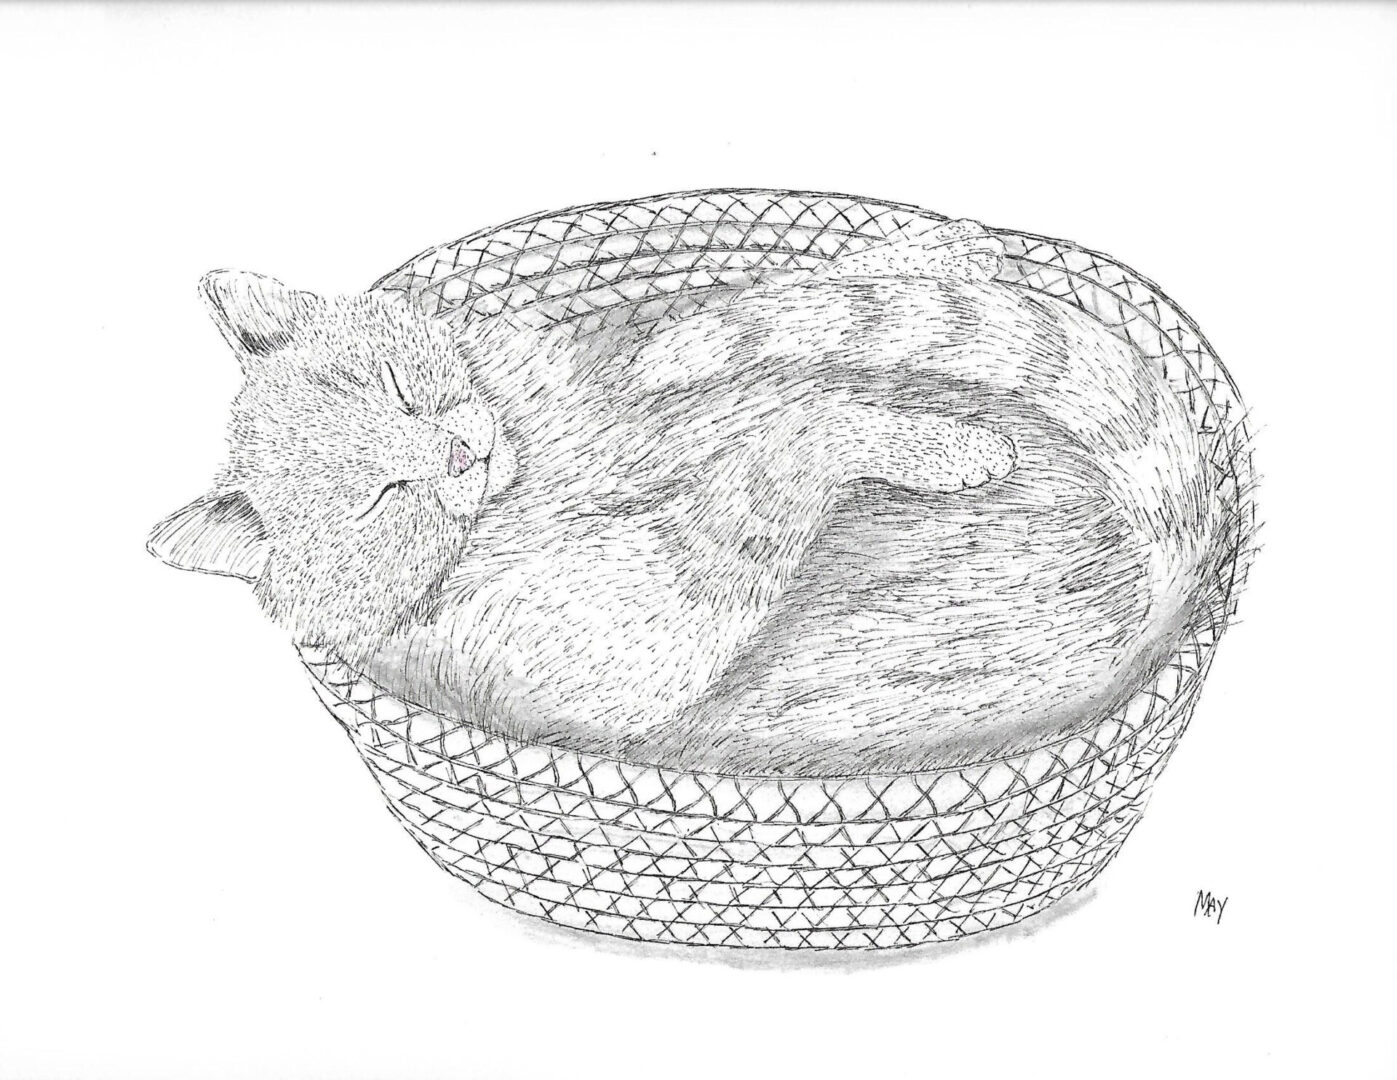 A cat sleeping in a basket